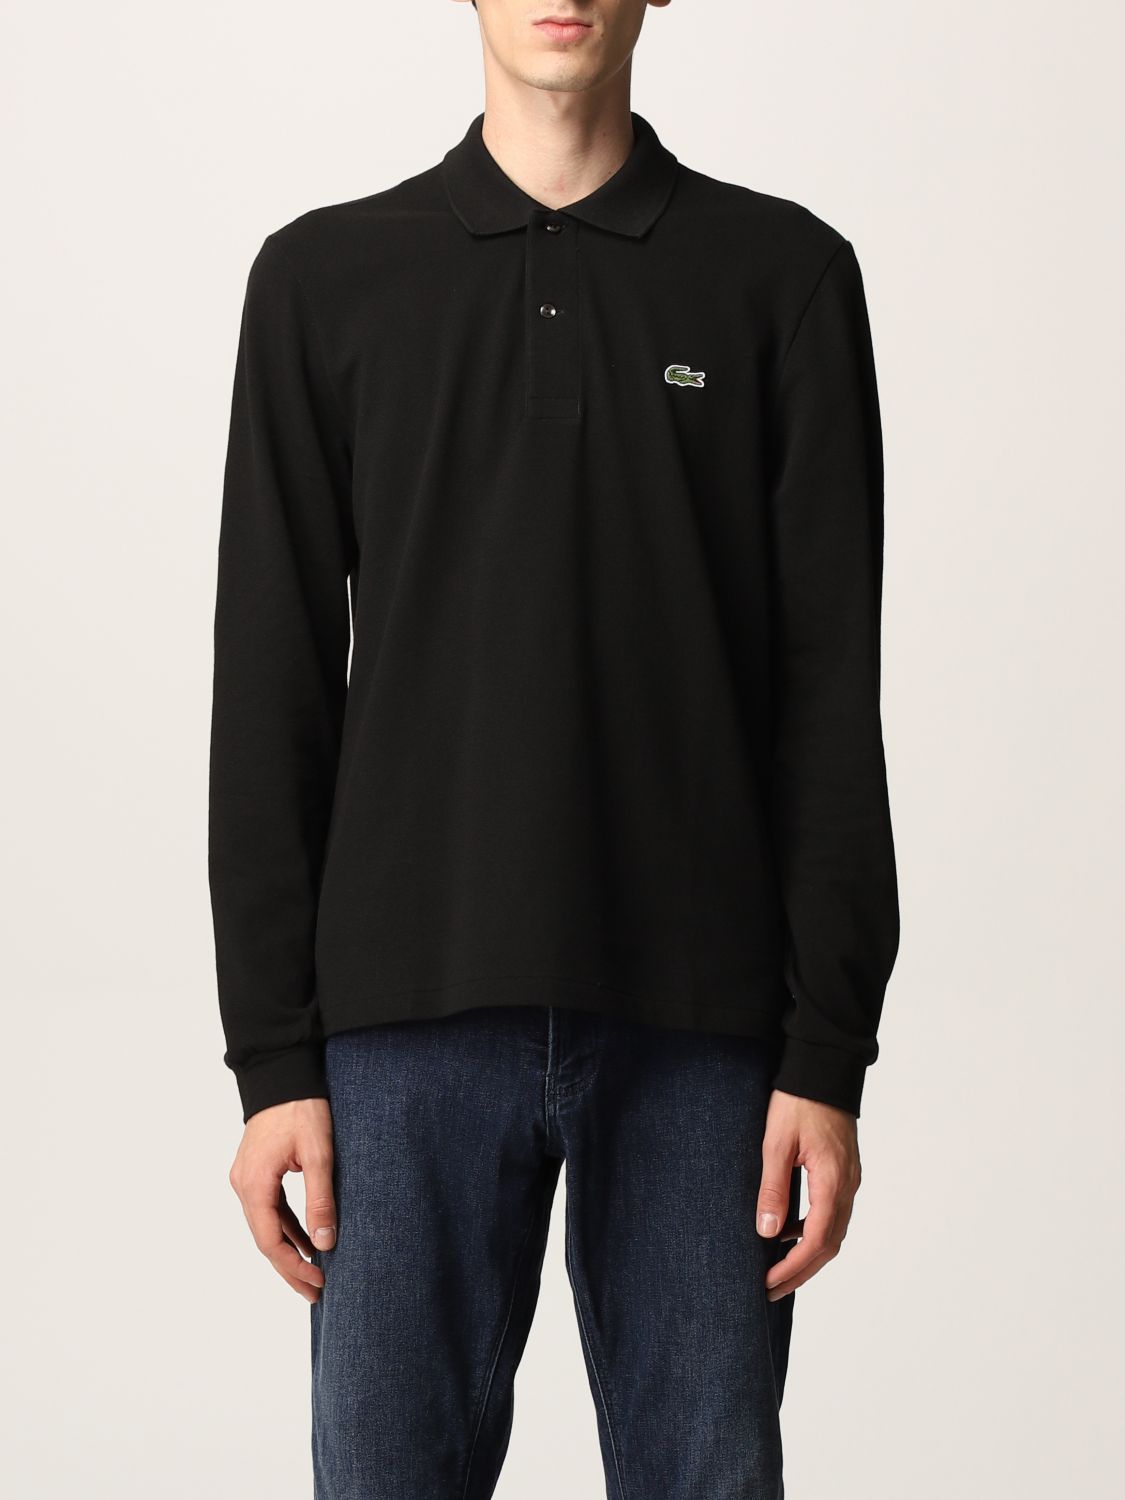 LACOSTE: Sweater | Shirt Lacoste Men Black | Polo Shirt Lacoste L1312